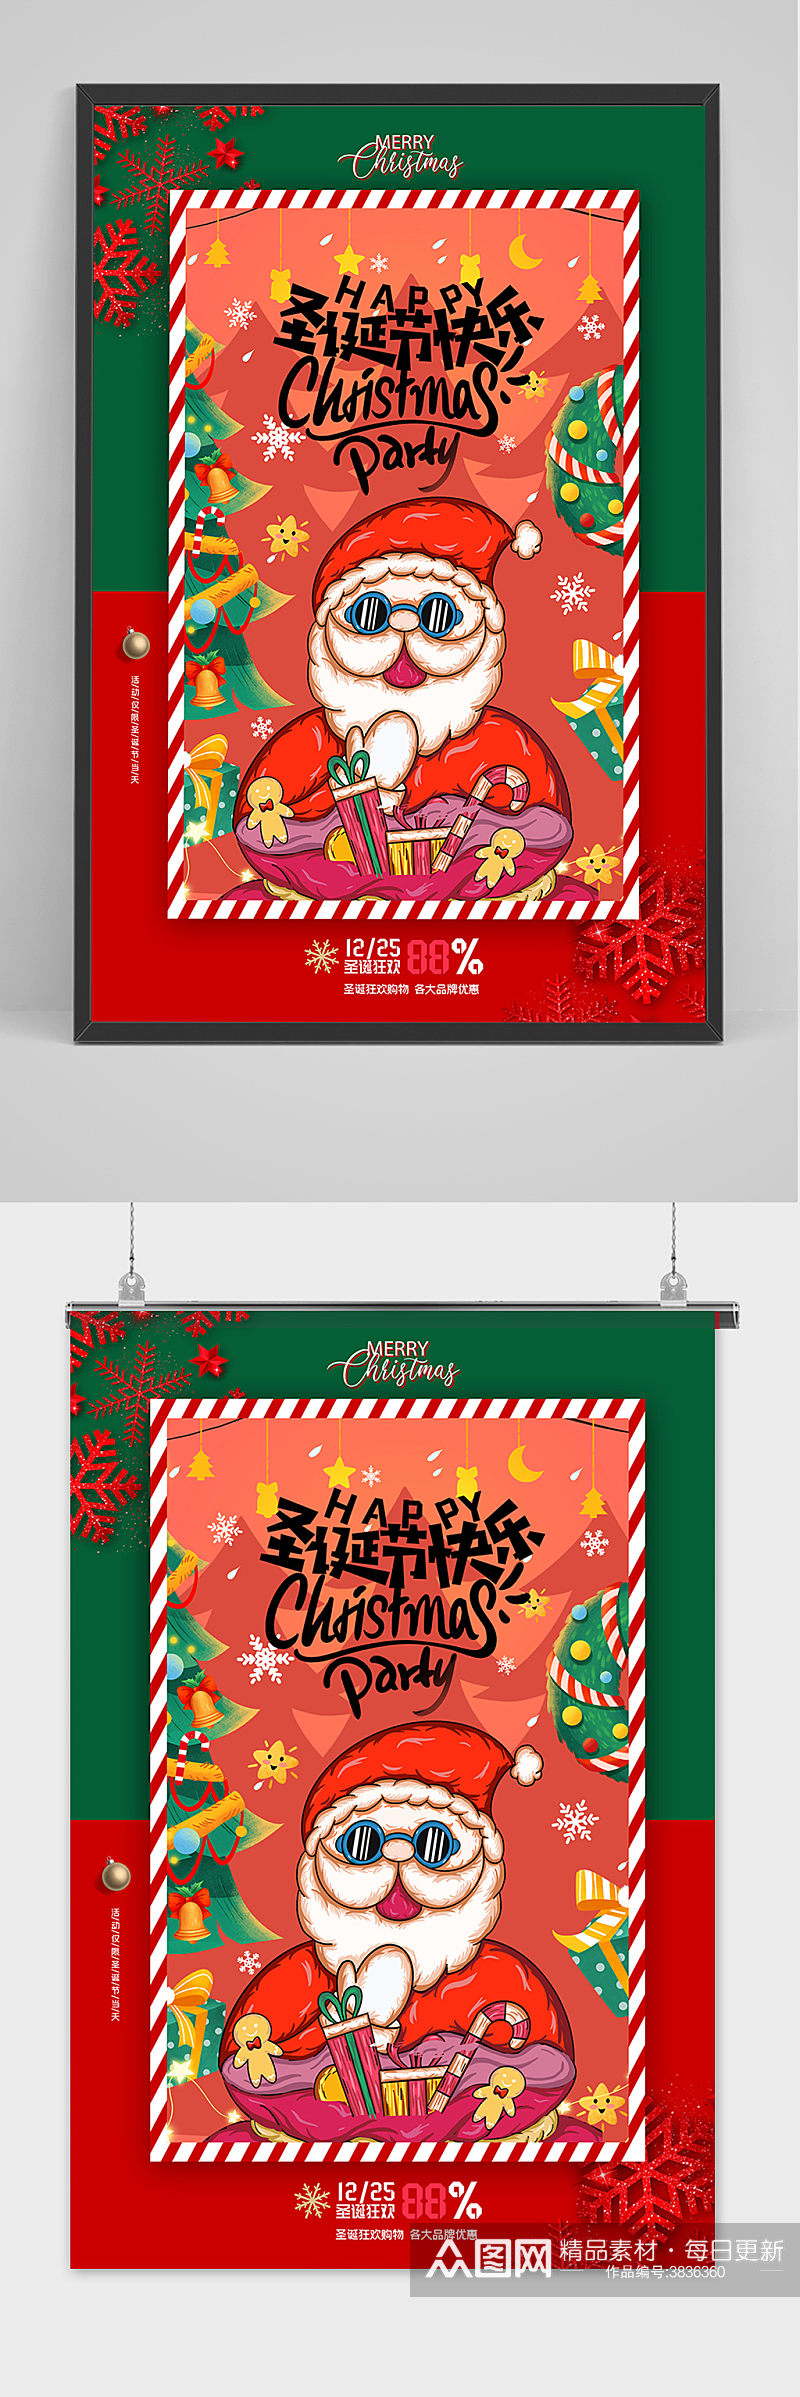 创意红绿圣诞老人圣诞节海报素材